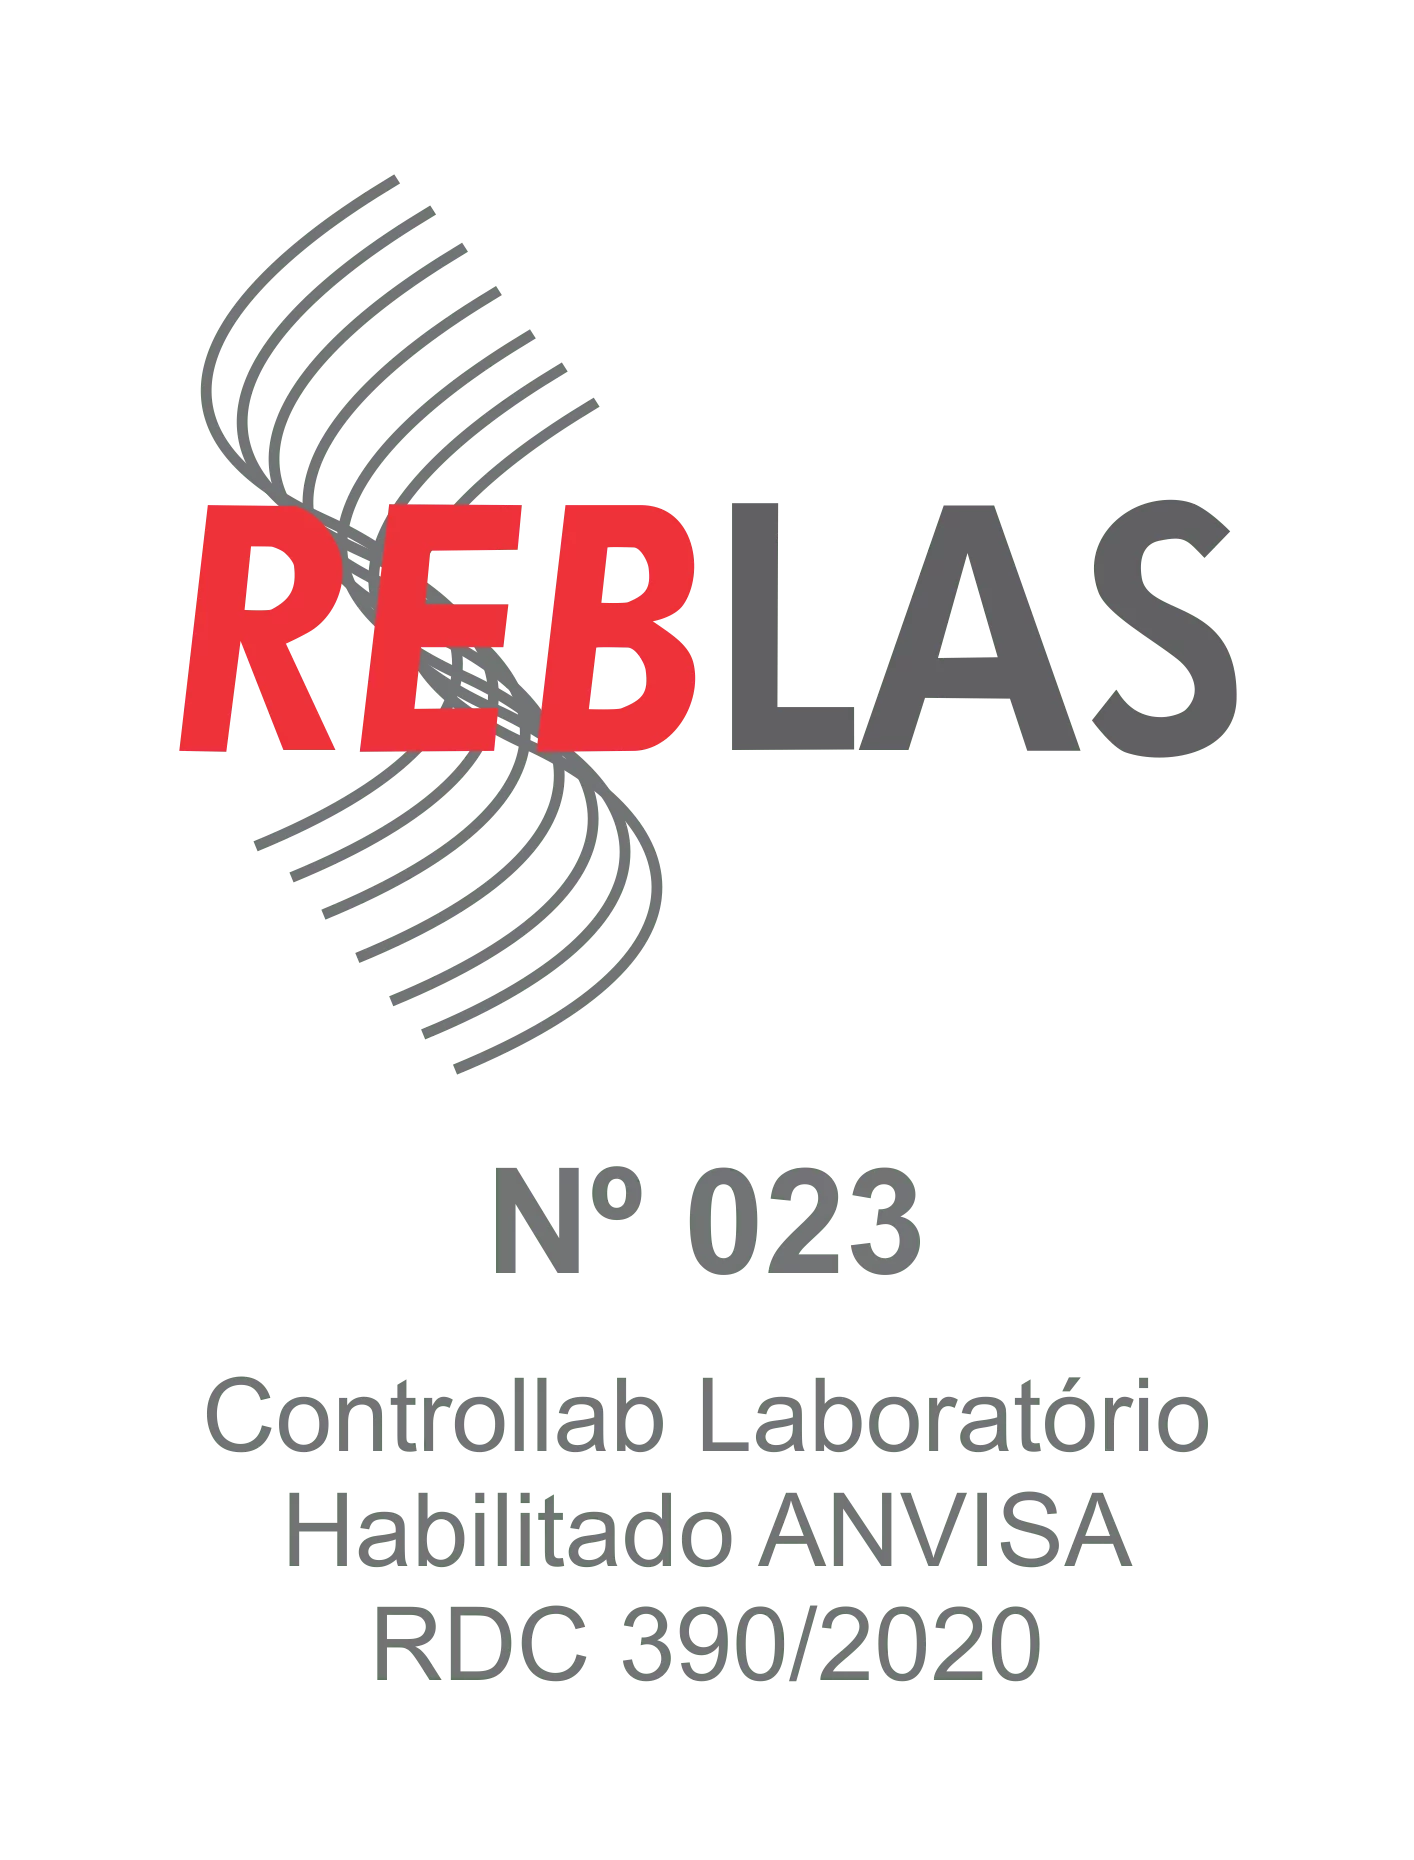 Logo REBLAS